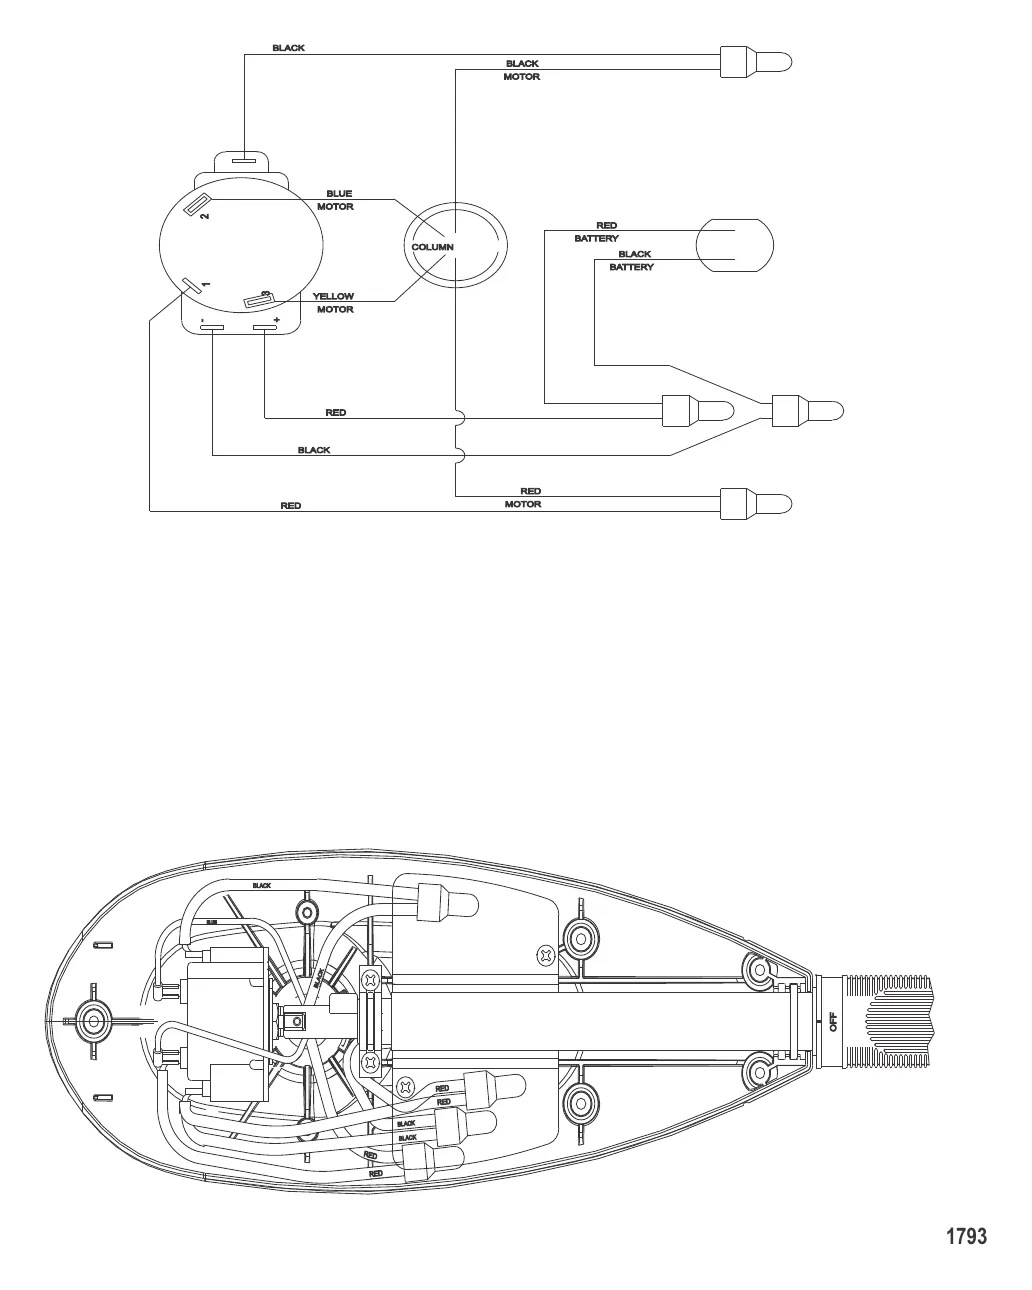 Схема электрических подключений (Модель T46) (без быстроразъемного соединения)